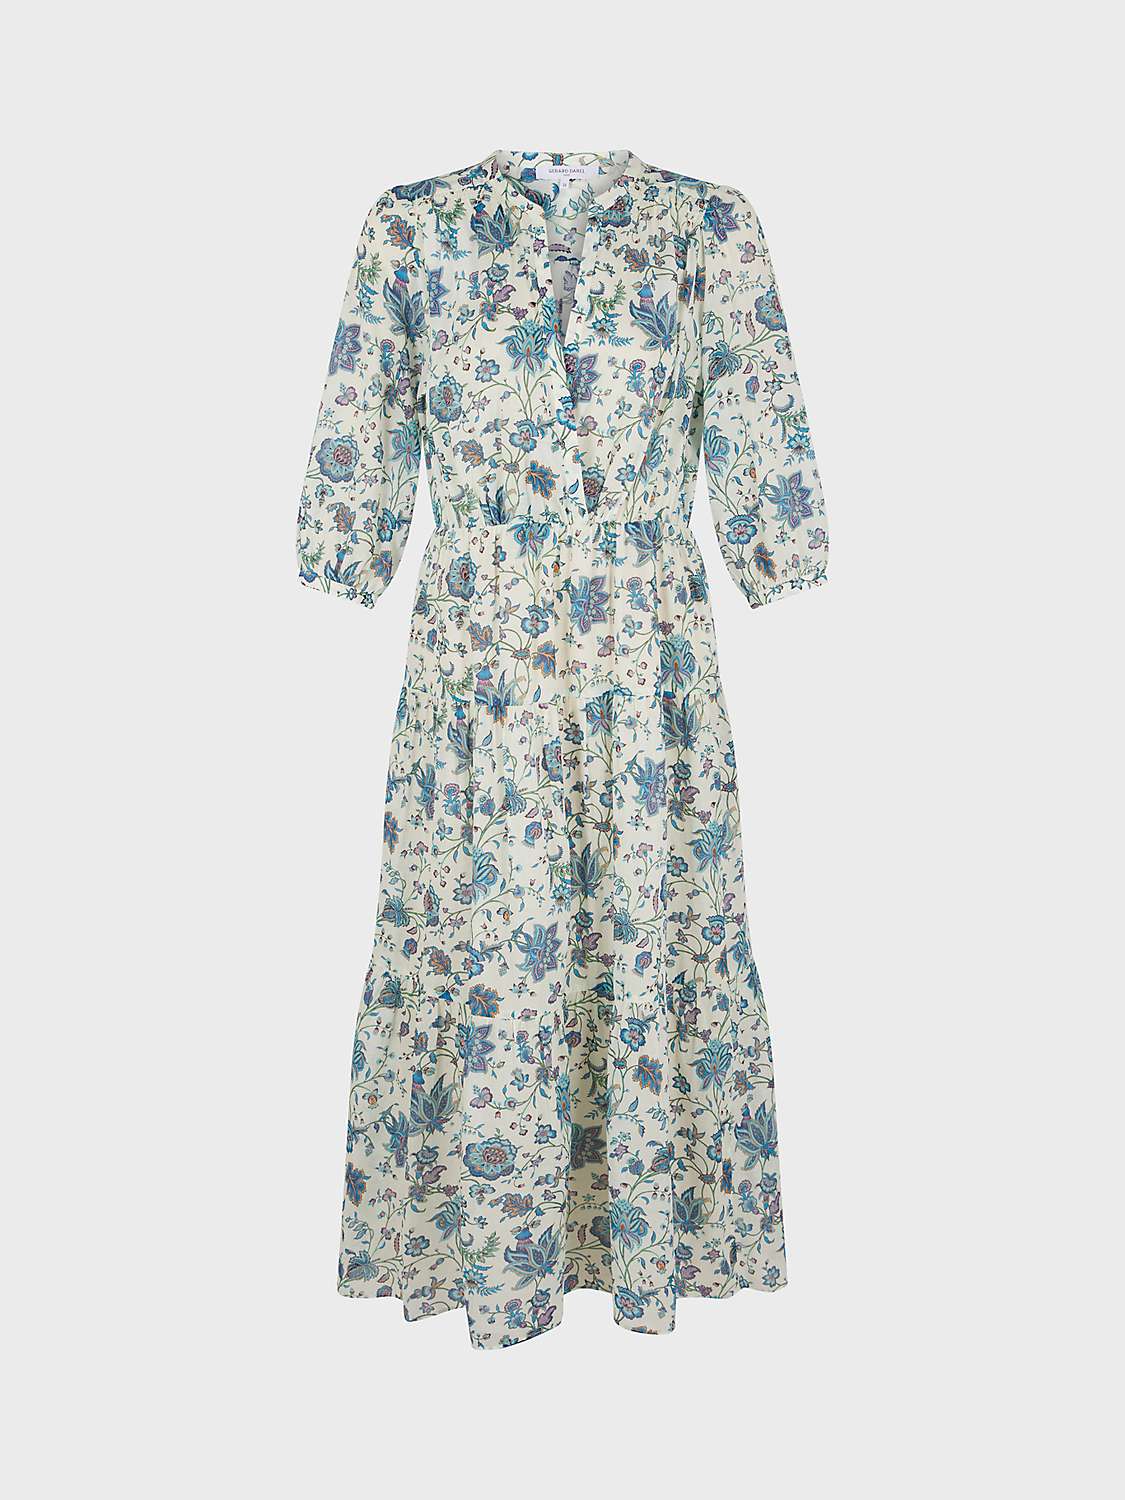 Buy Gerard Darel Elysee Floral Tiered Dress, Ecru/Multi Online at johnlewis.com